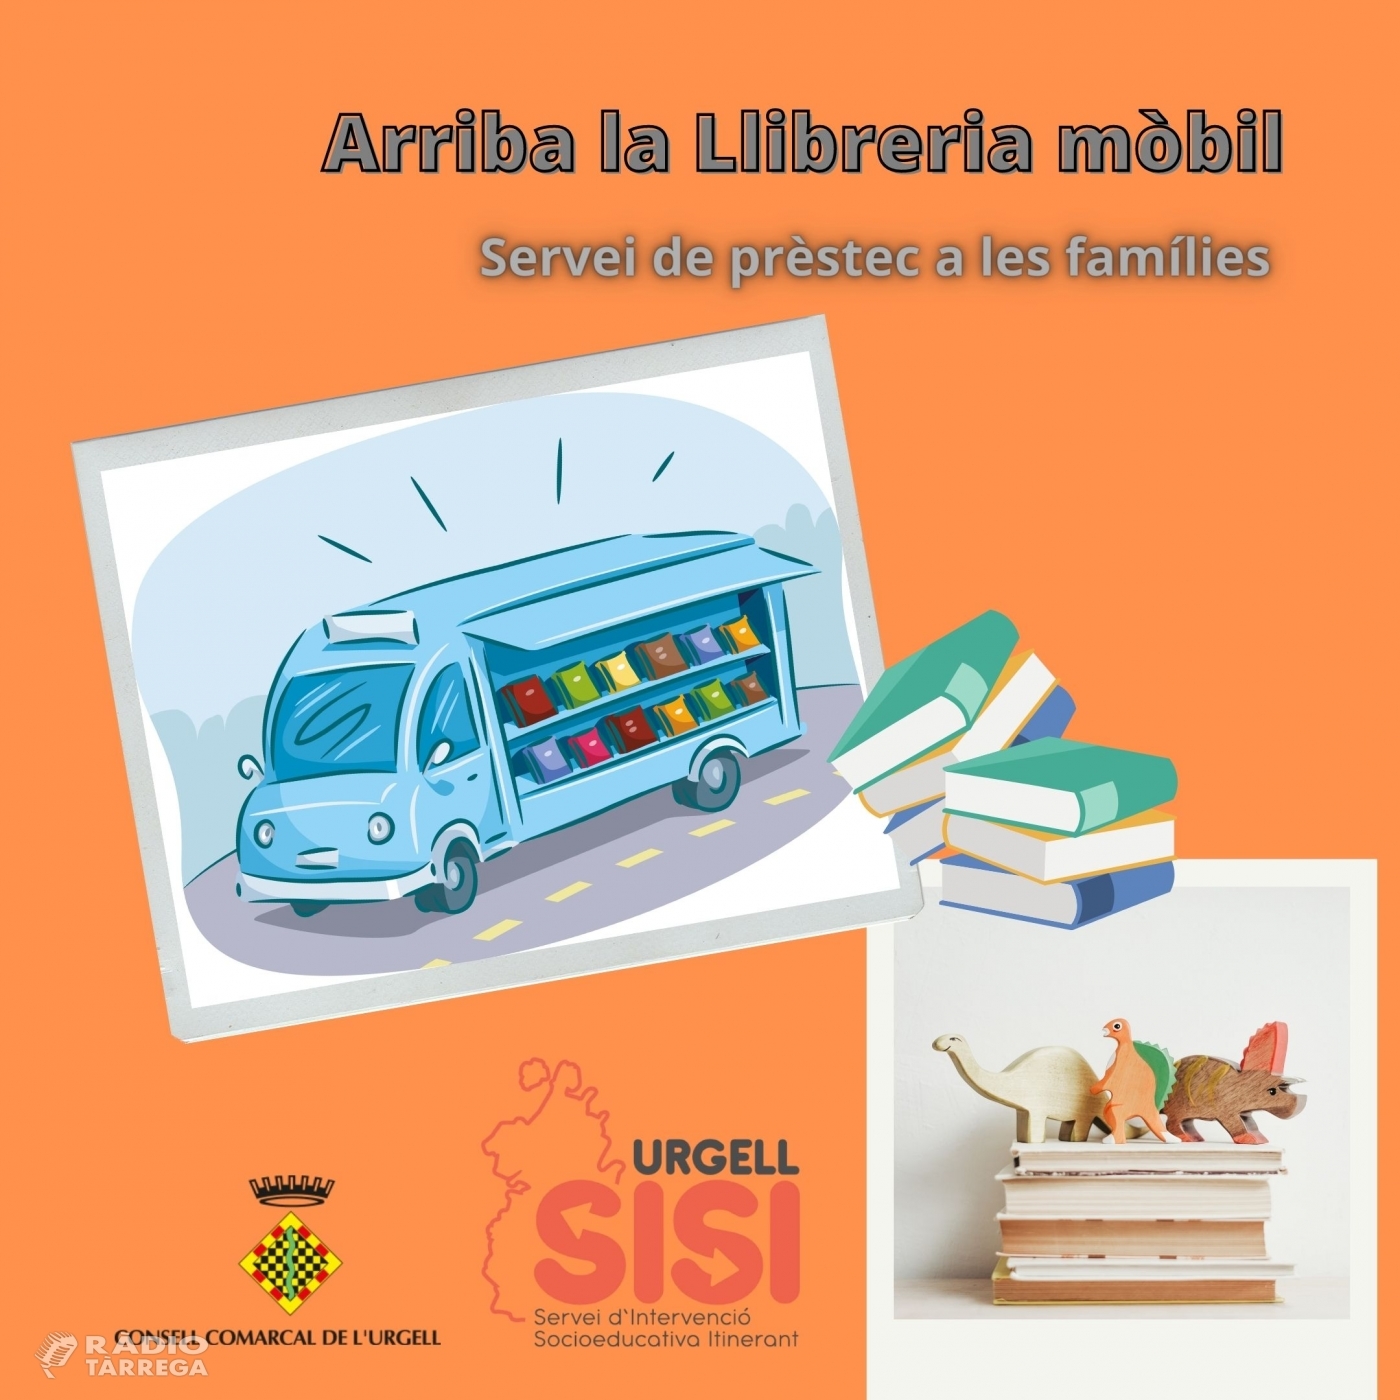 El Servei d’intervenció socioeducativa itinerant de l’Urgell posa en marxa una Biblioteca Mòbil